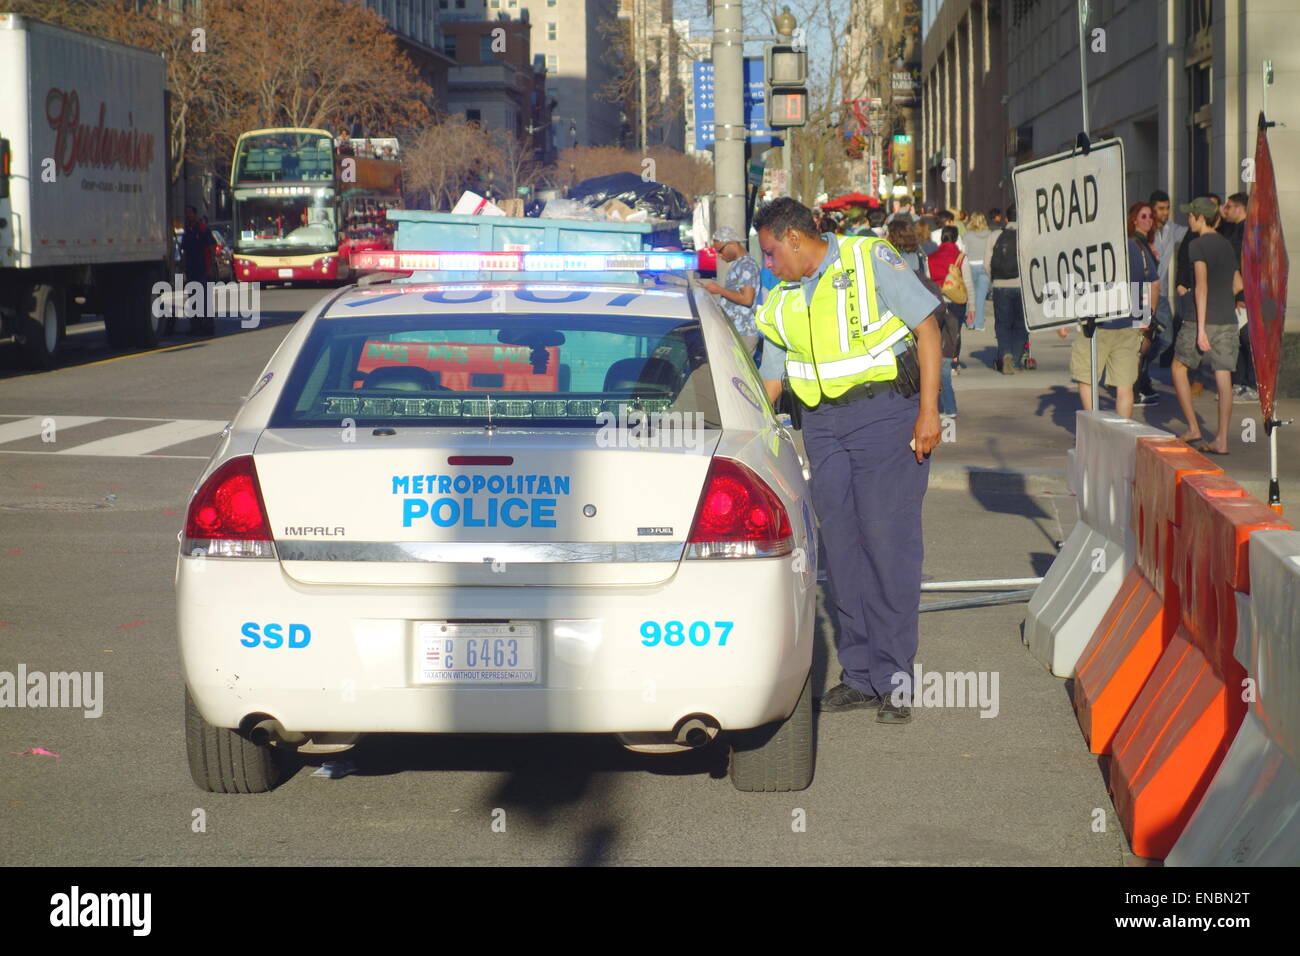 Metropolitan Police cruiser dans une rue de Washington DC Banque D'Images